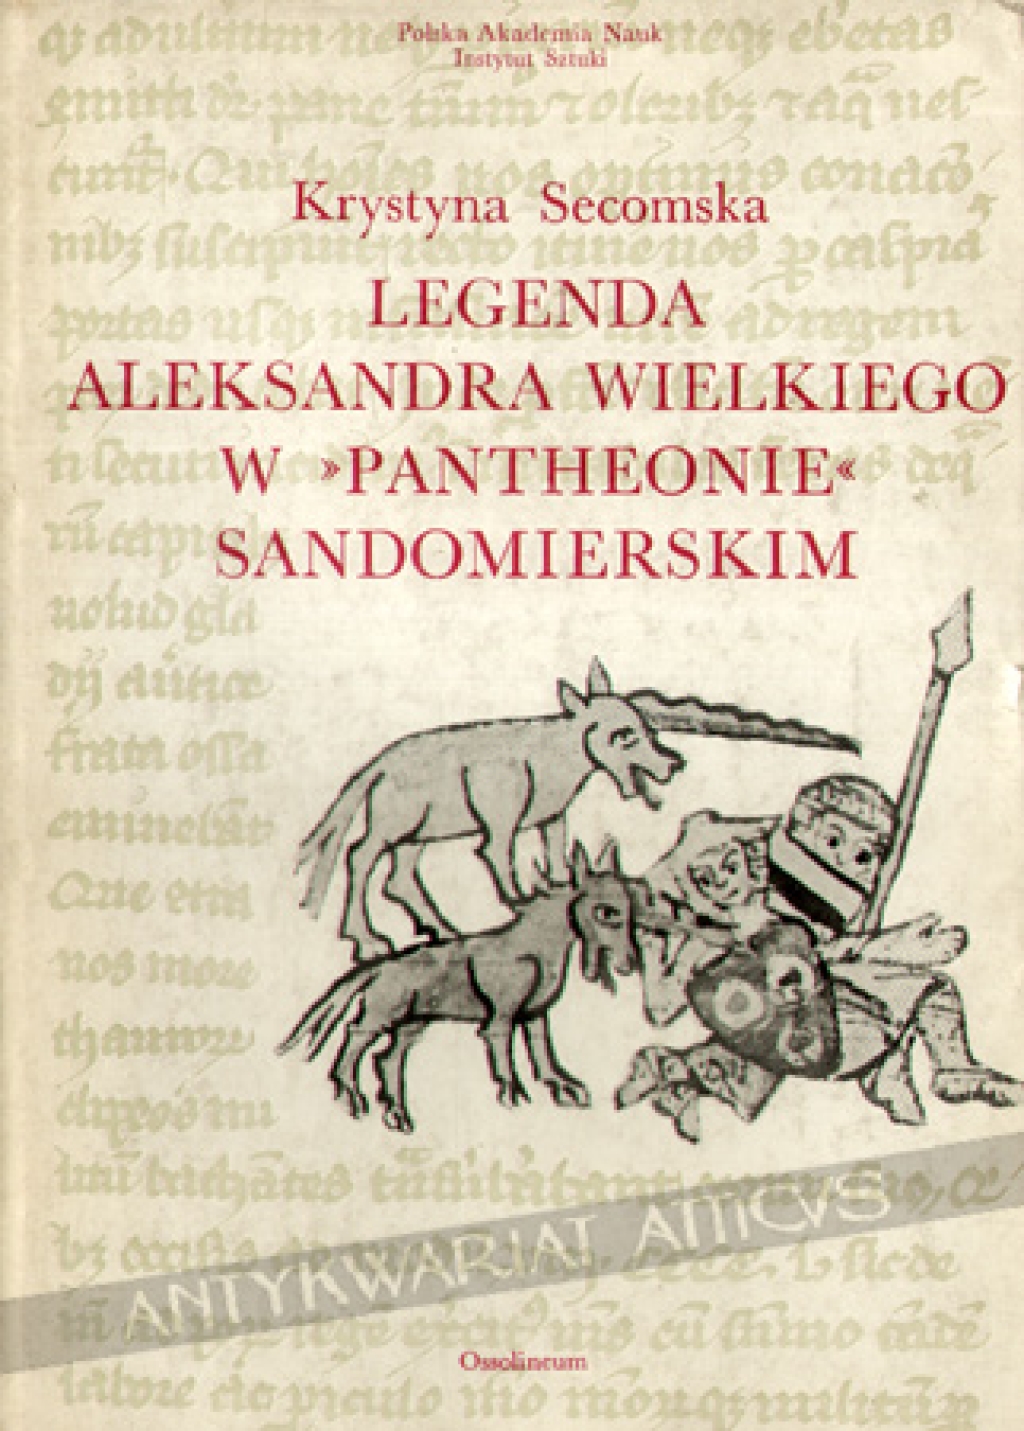 Legenda Aleksandra Wielkiego w "Pantheonie" sandomierskim. Miniatury w kodeksie z 1335 roku